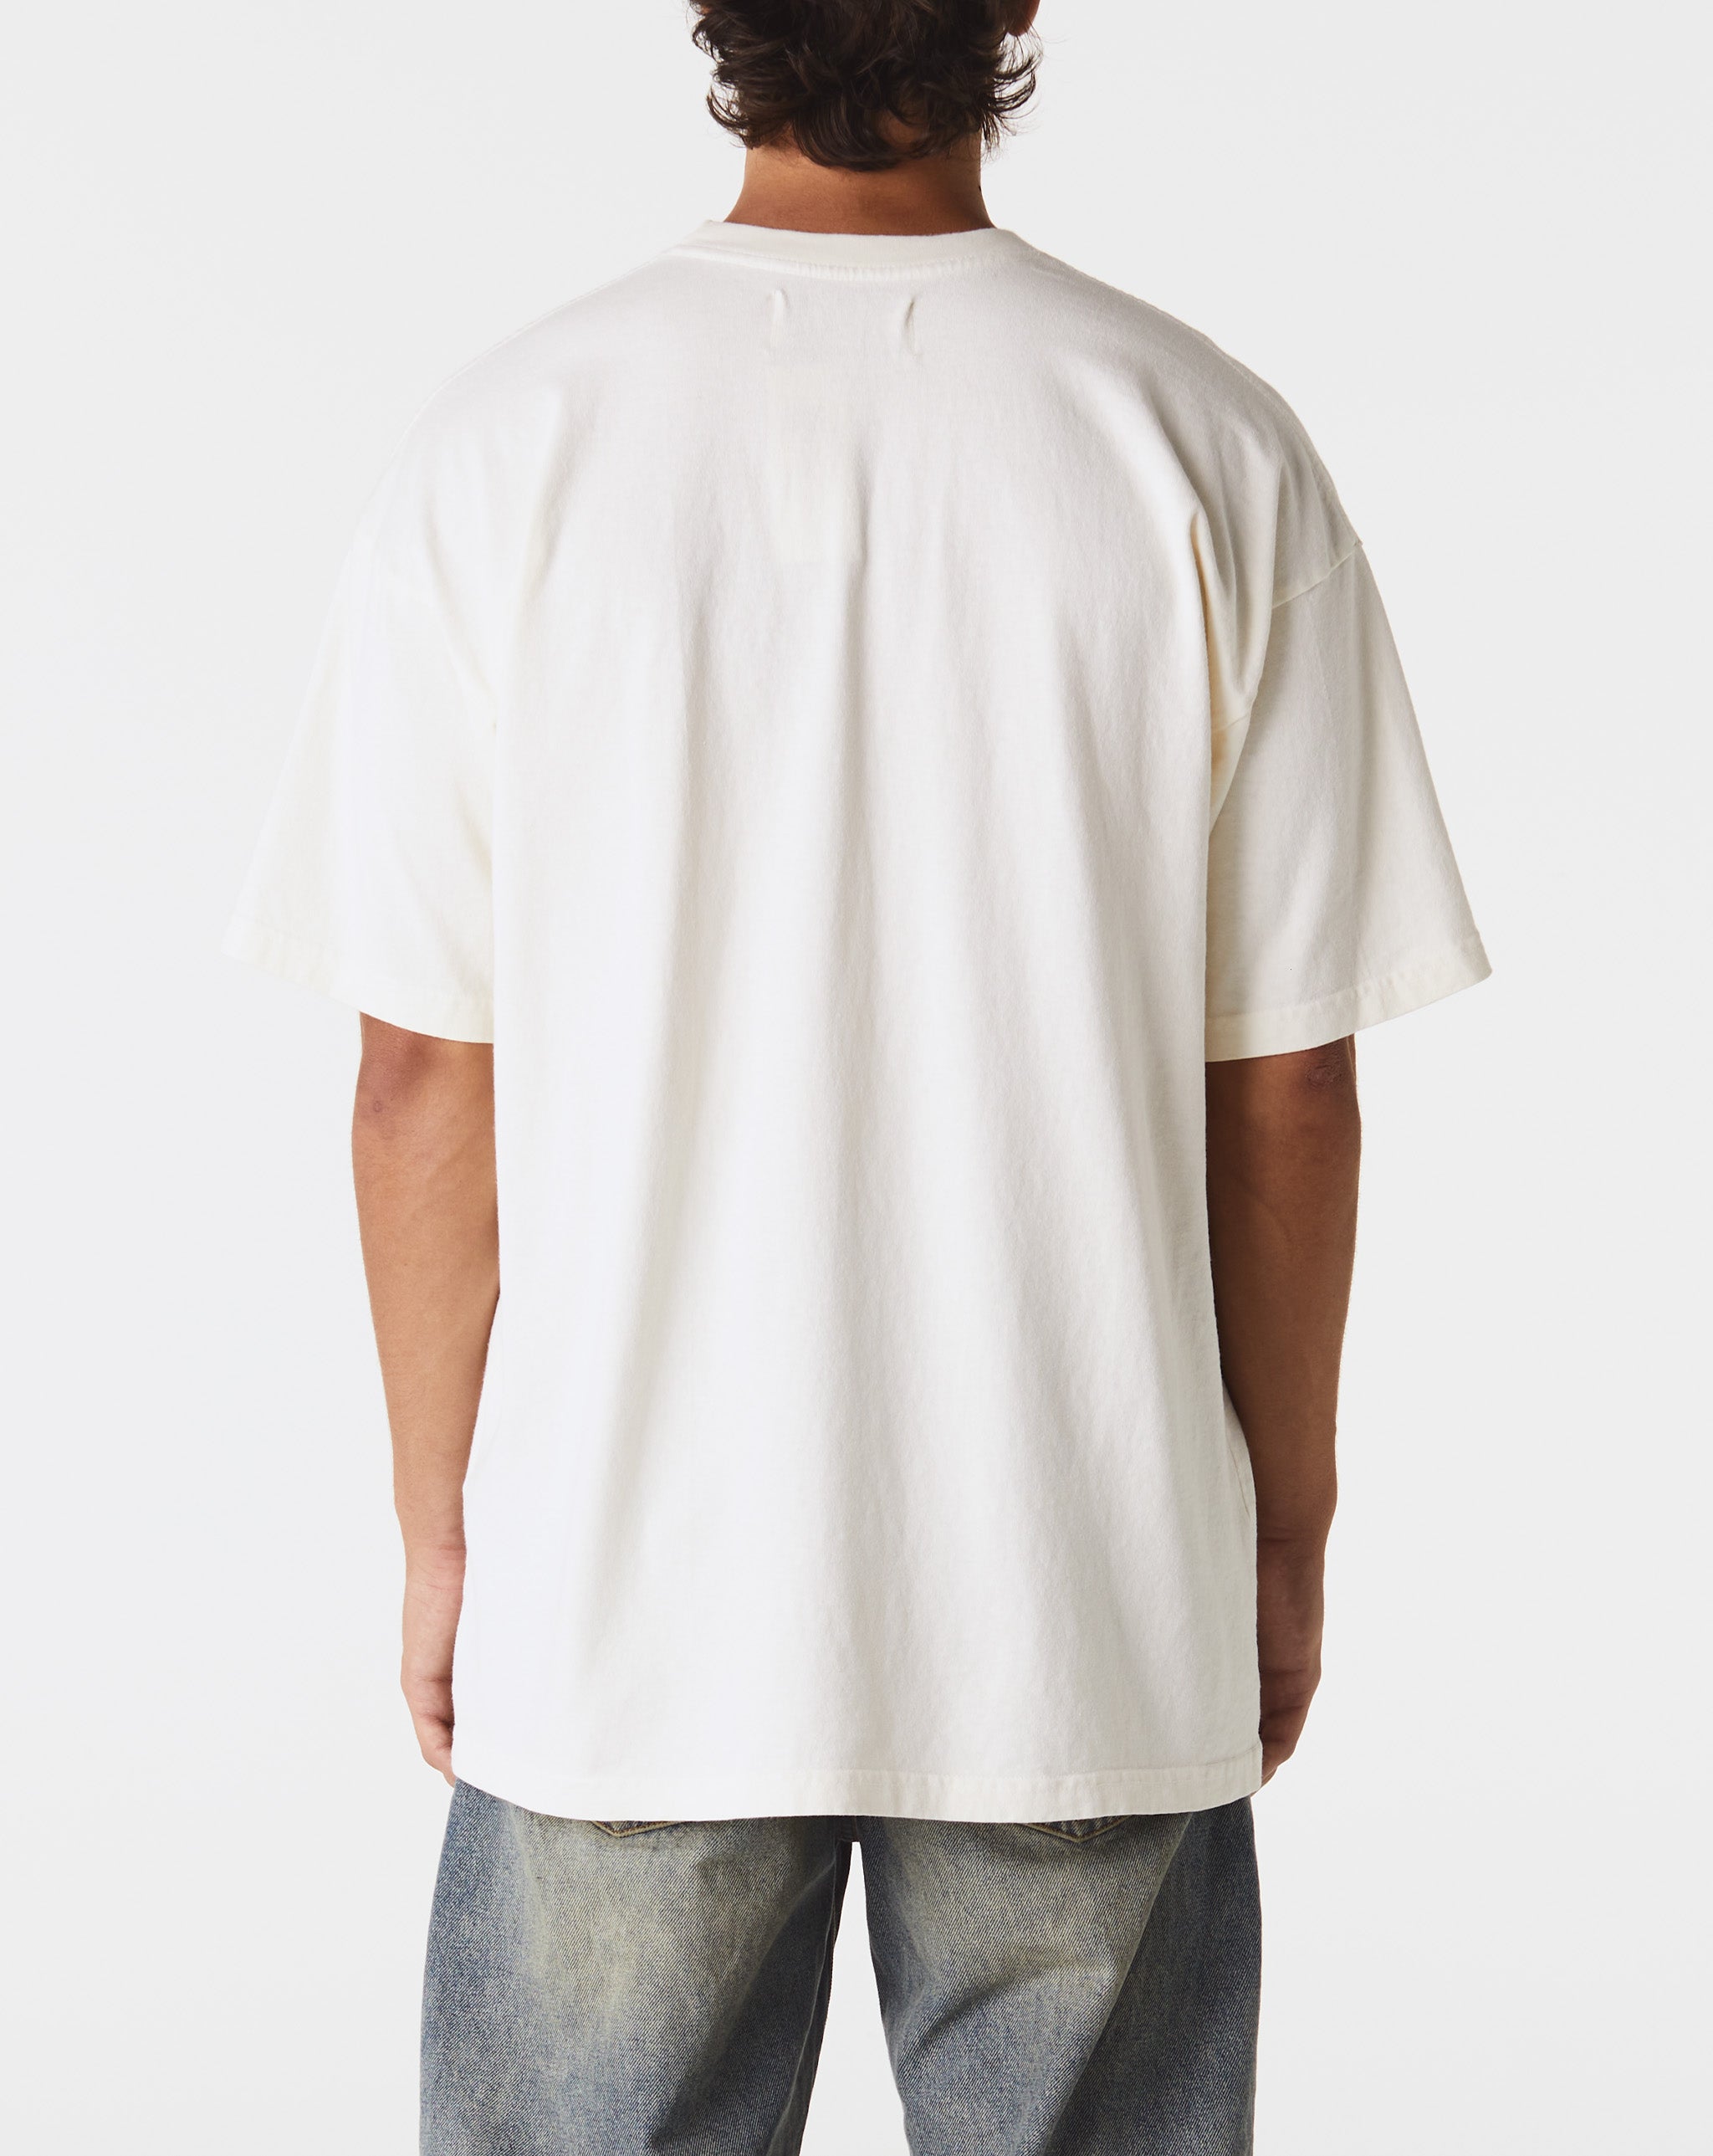 Satoshi Nakamoto Anxiety T-Shirt  - Cheap Urlfreeze Jordan outlet